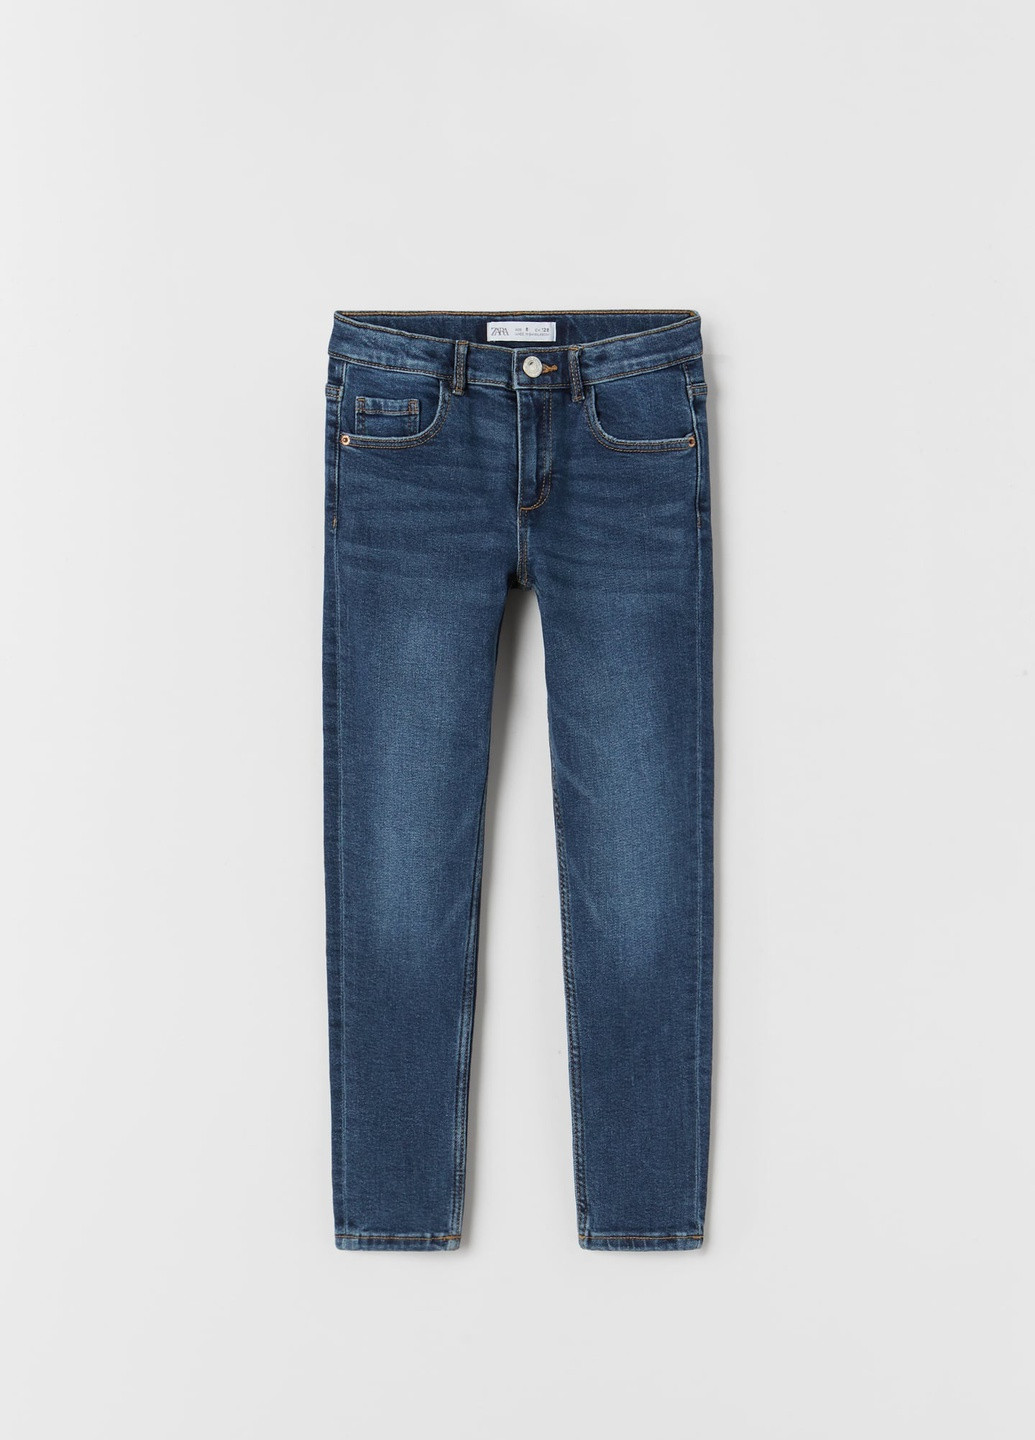 Синие демисезонные скинни джинсы для девочки 7147700407 Zara